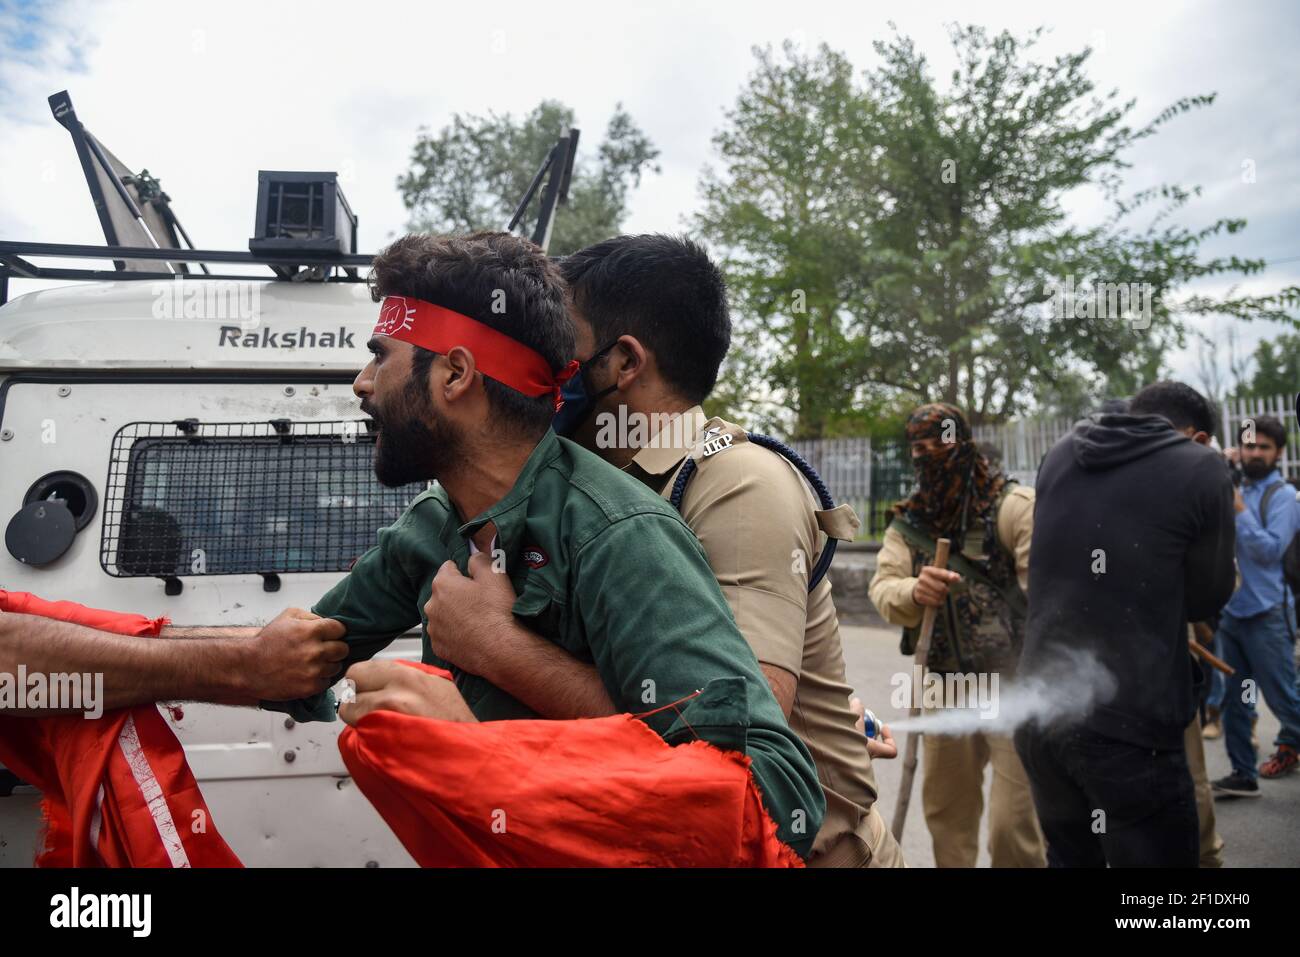 Las fuerzas de la India detuvieron al luto chiíta de cachemira durante la procesión de Muharram. Las autoridades impusieron estrictas restricciones en muchas zonas de Srinagar para prohibir la procesión del 8º Muharram. (Foto de Irnes Abbas / SOPA Images/Sipa USA) Foto de stock